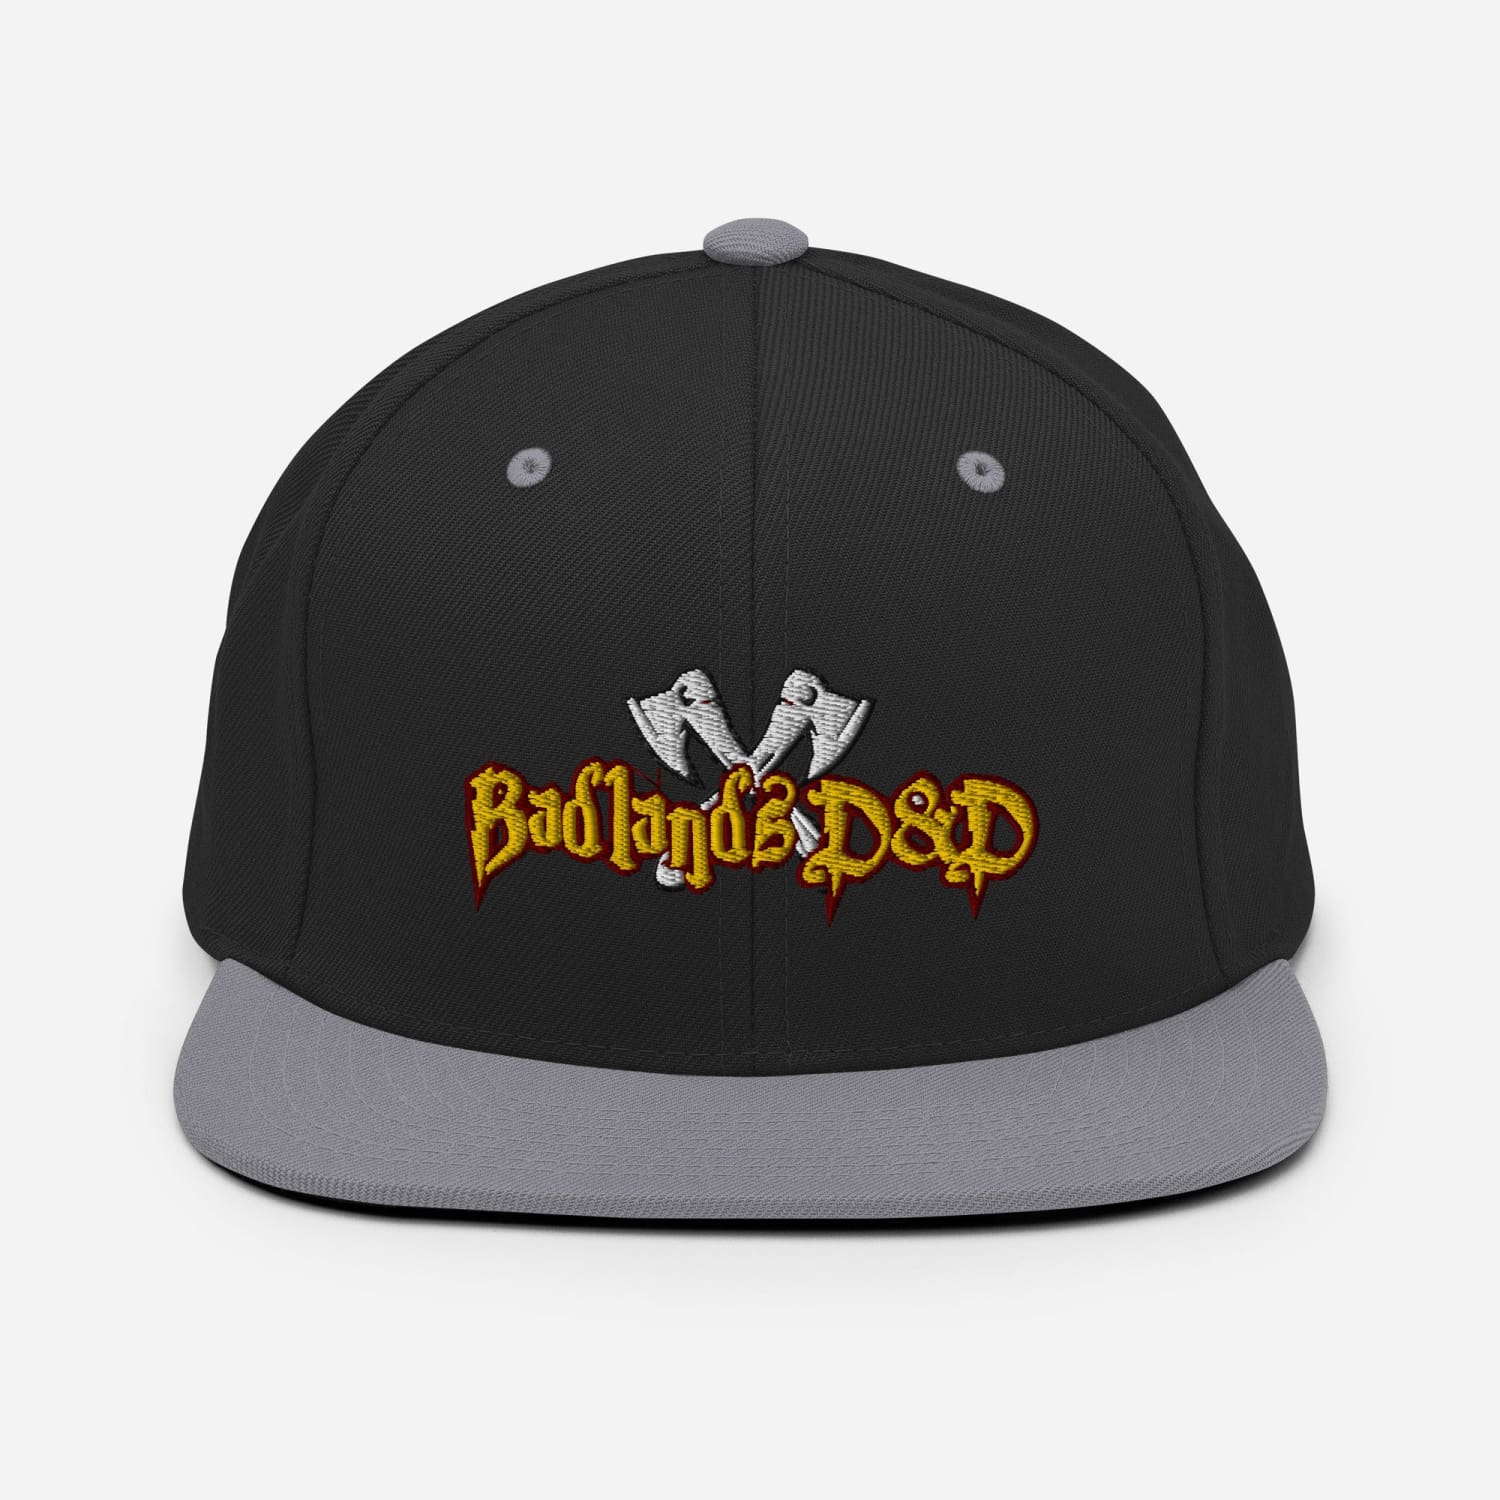 Badlands D&D Logo Classic Snapback Cap - Black/ Silver